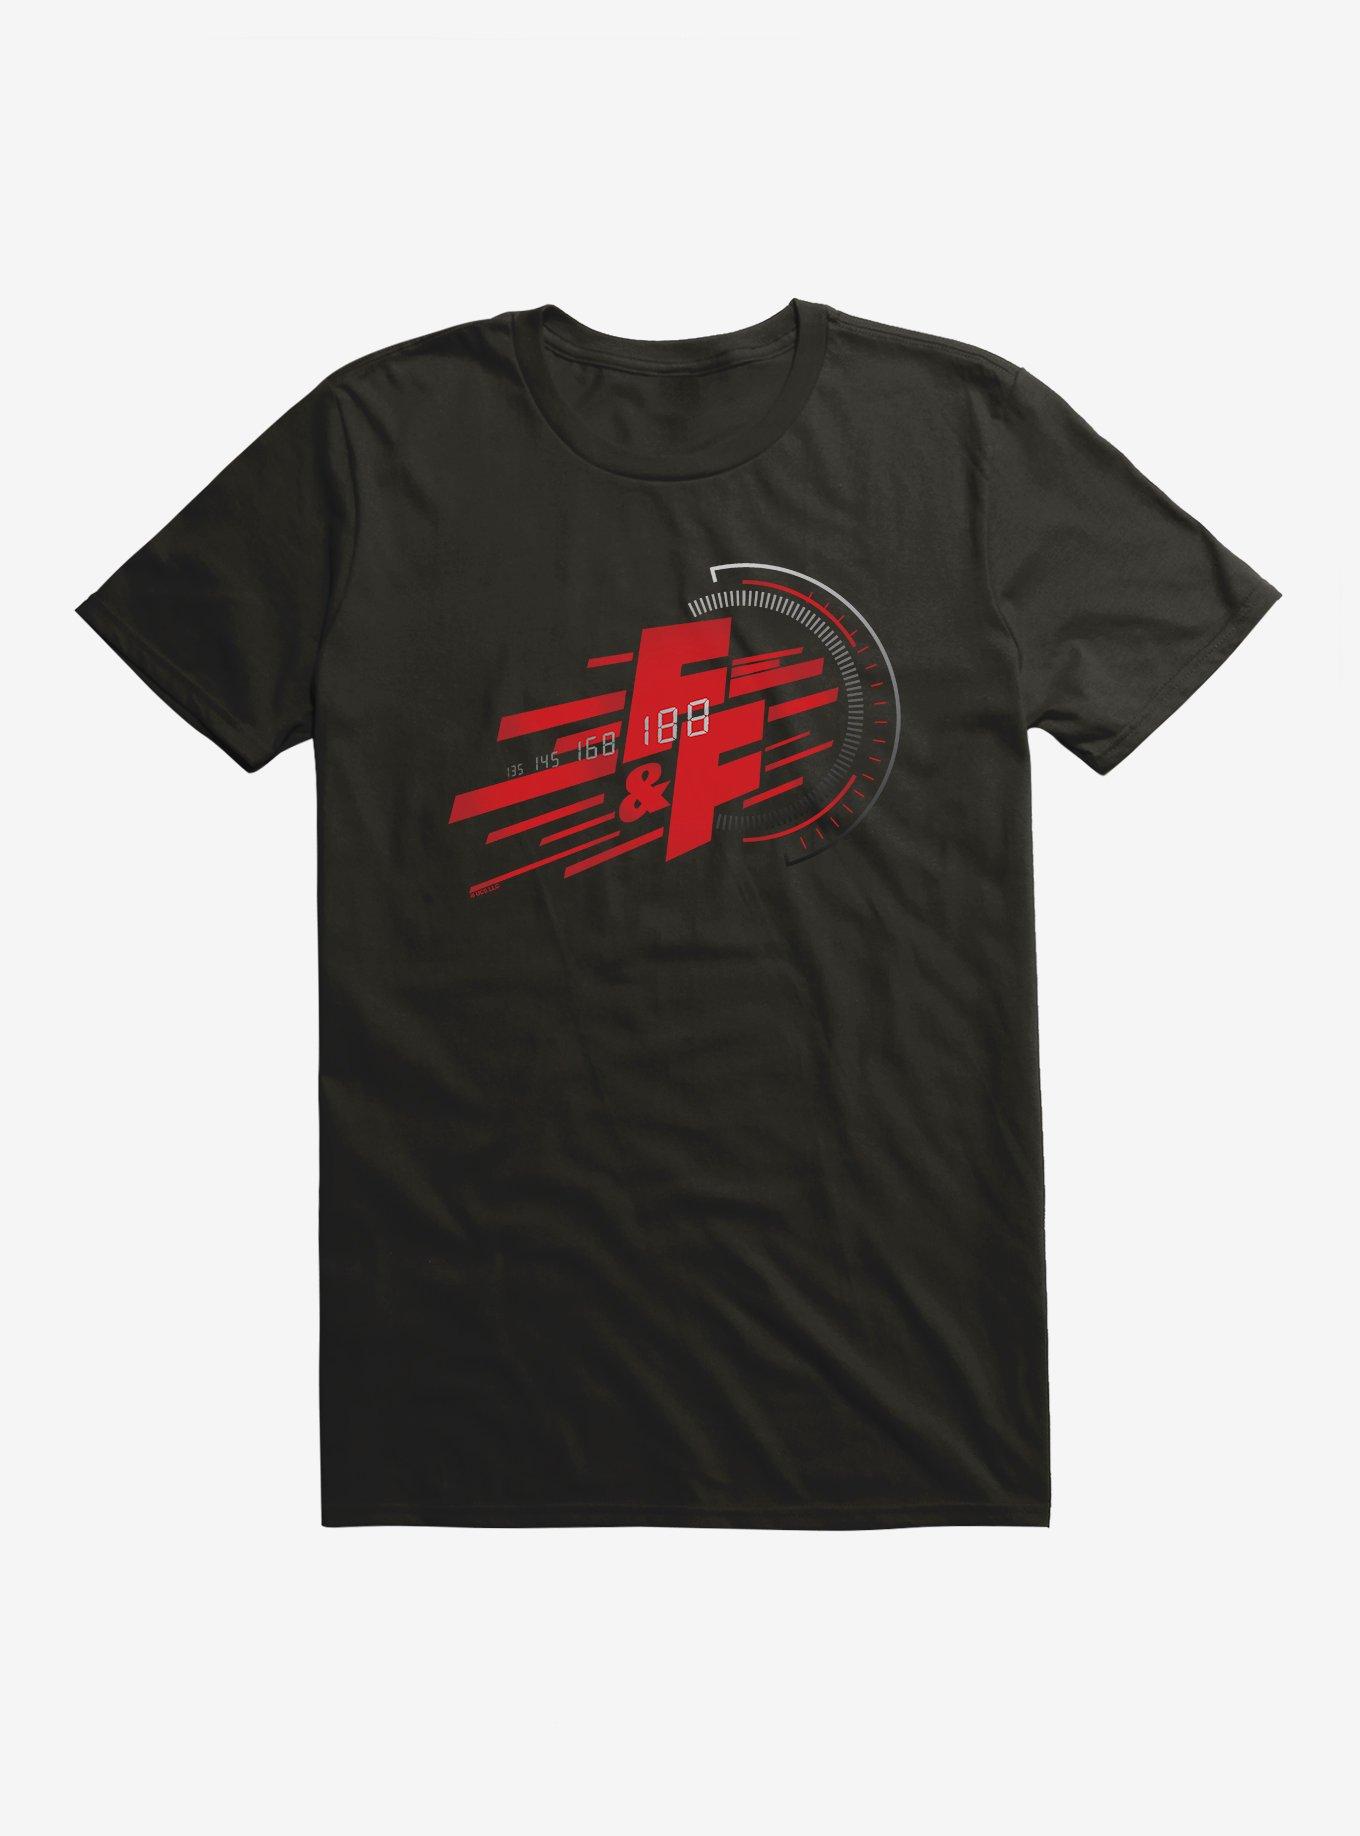 Fast & Furious Drift Logo T-Shirt | BoxLunch